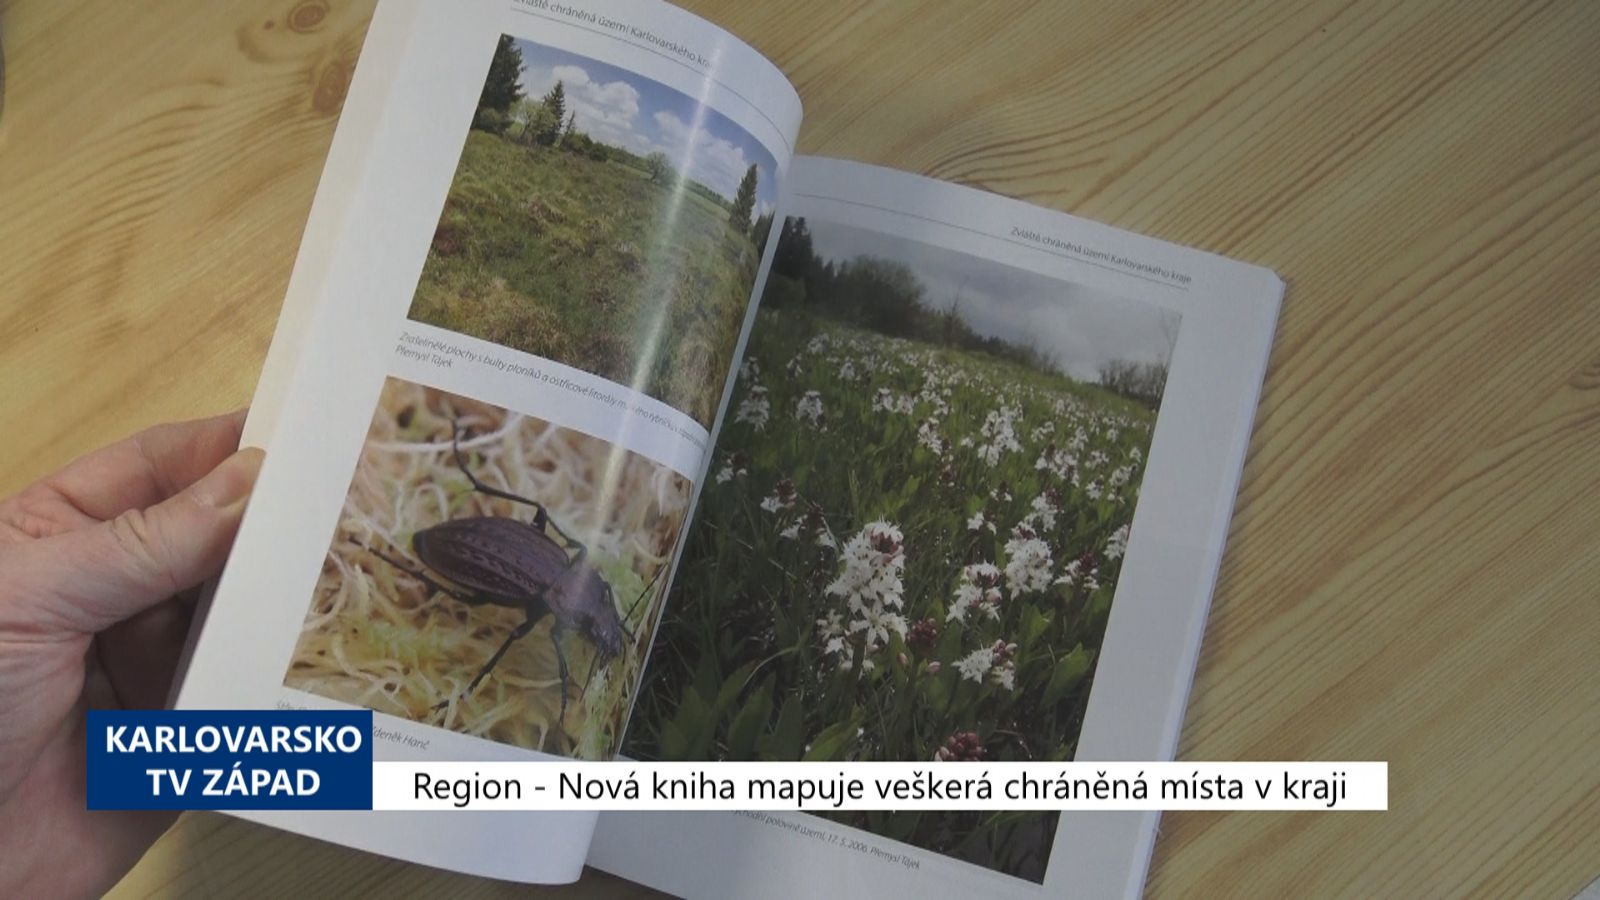 Region: Nová kniha mapuje veškerá chráněná místa v kraji (TV Západ)